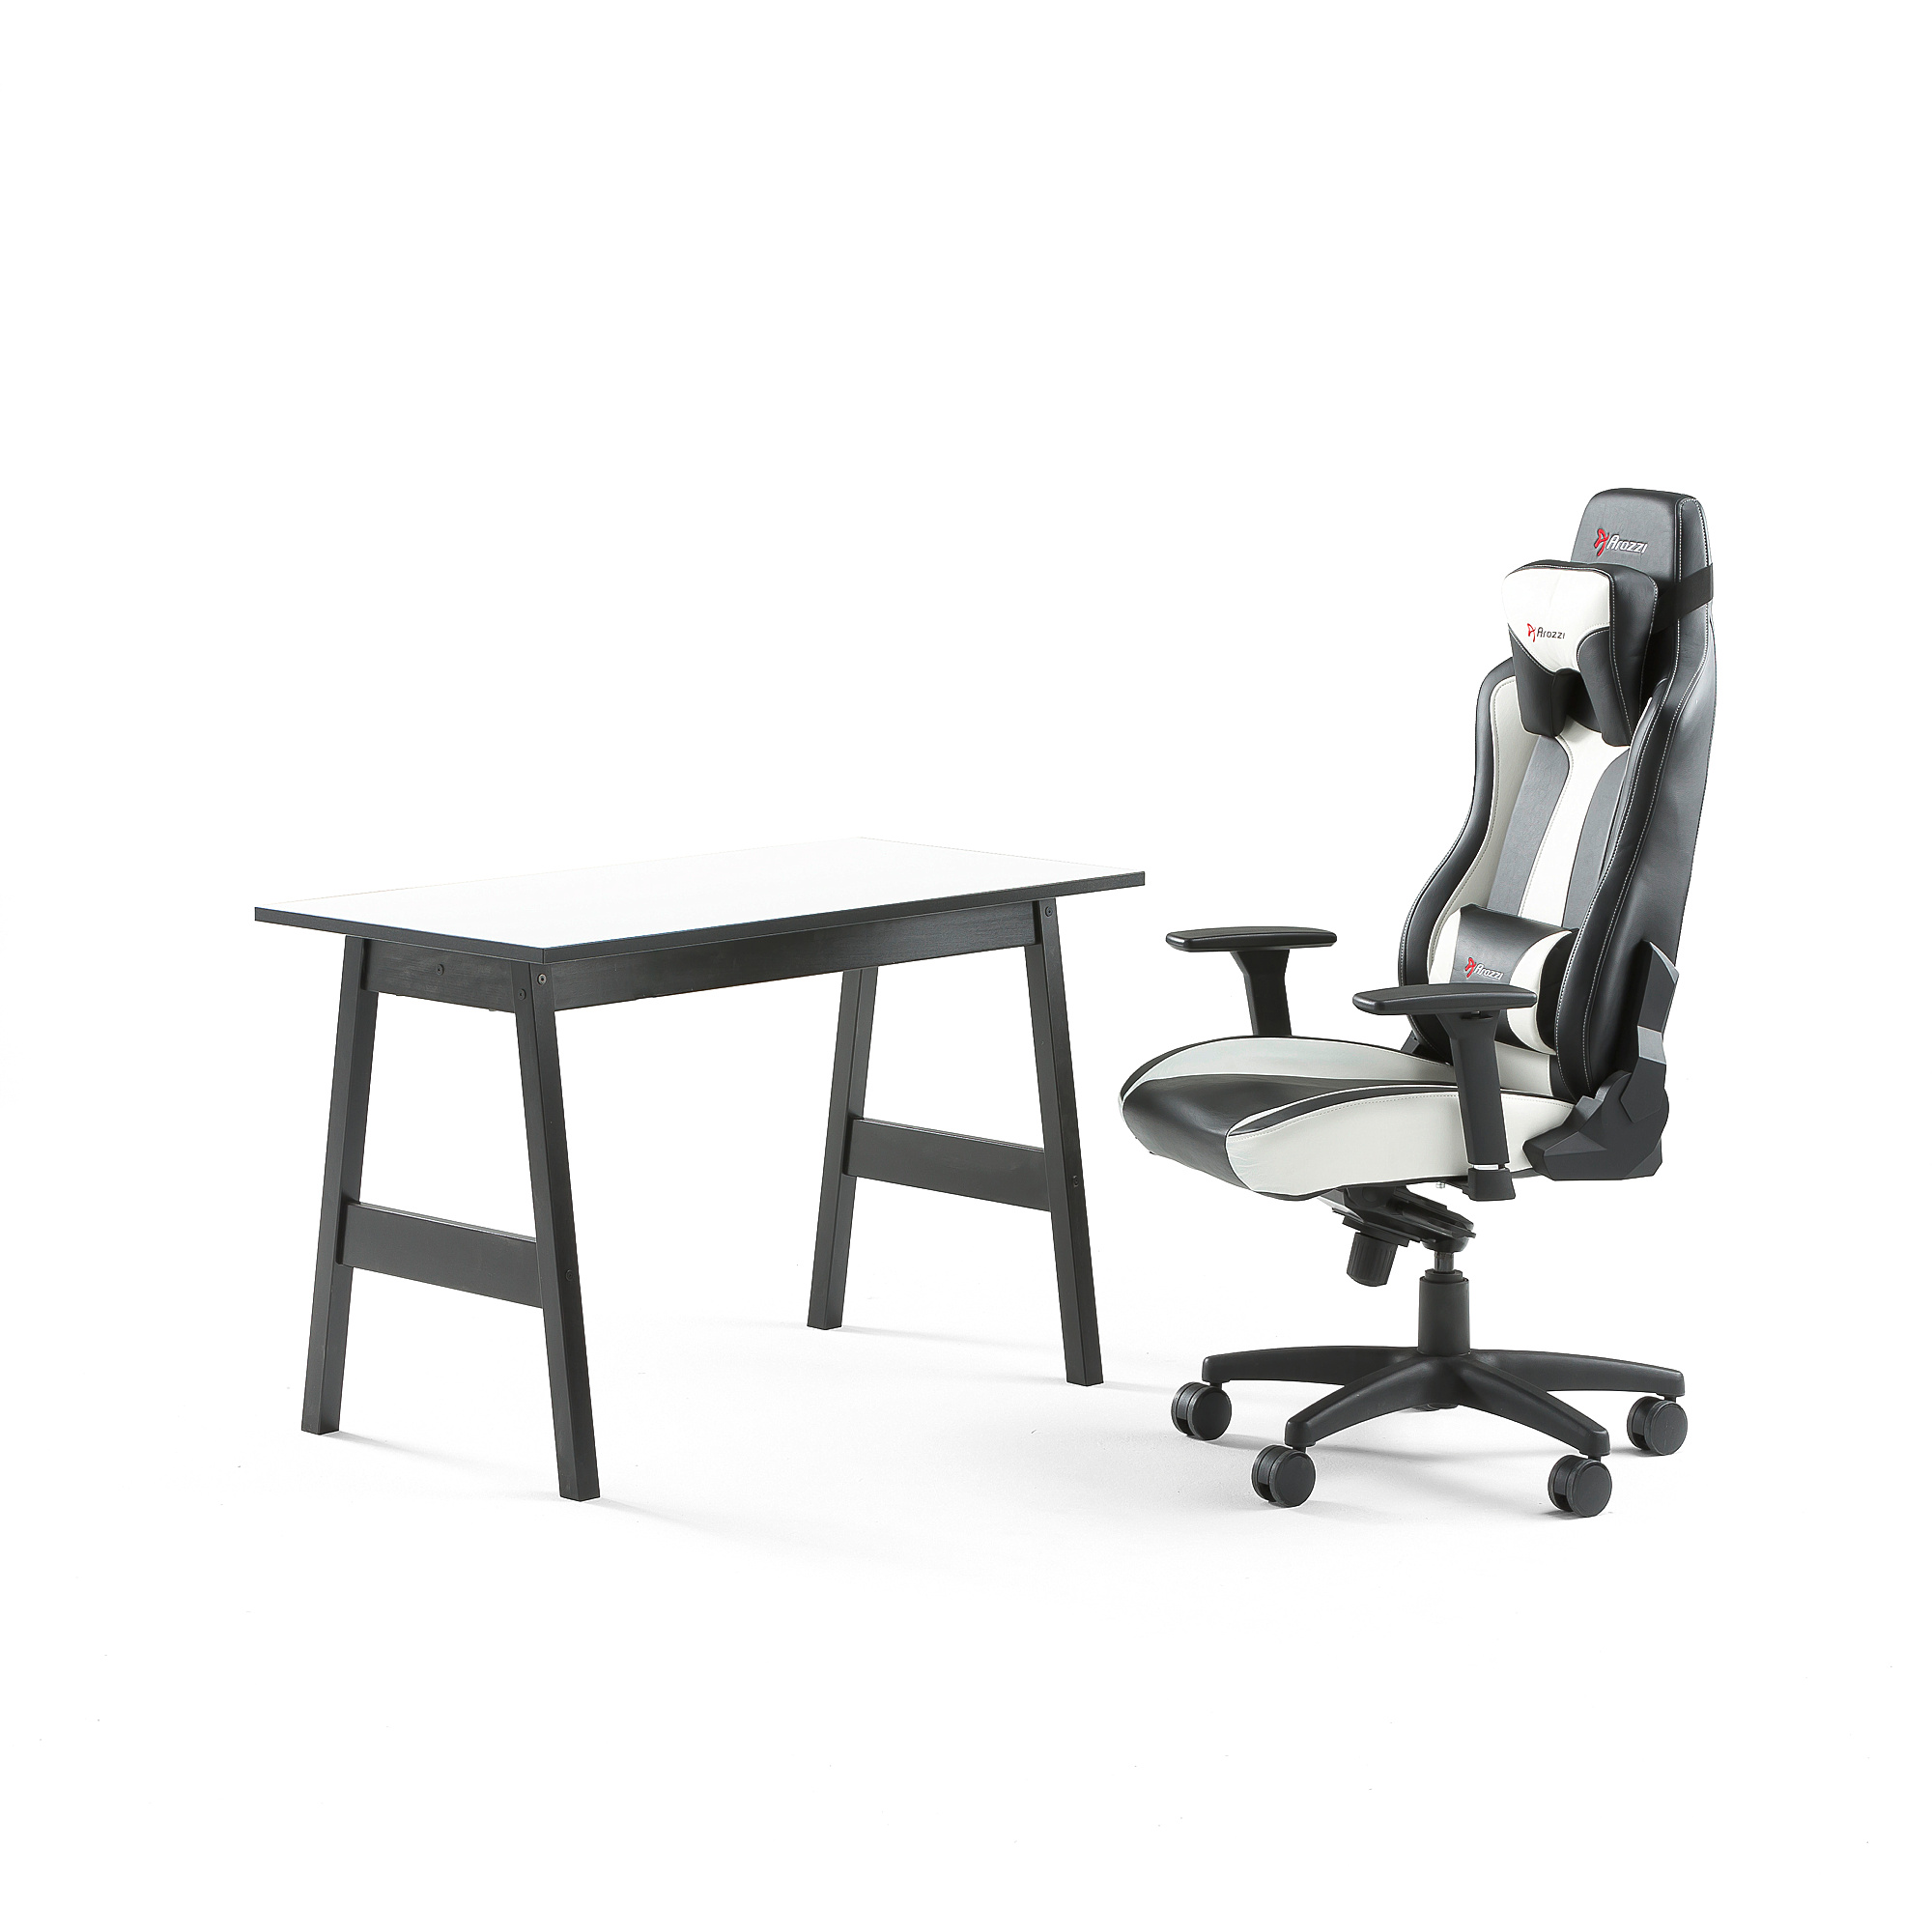 Kancelárska zostava: Stôl Nomad + kancelárska stolička Lincoln